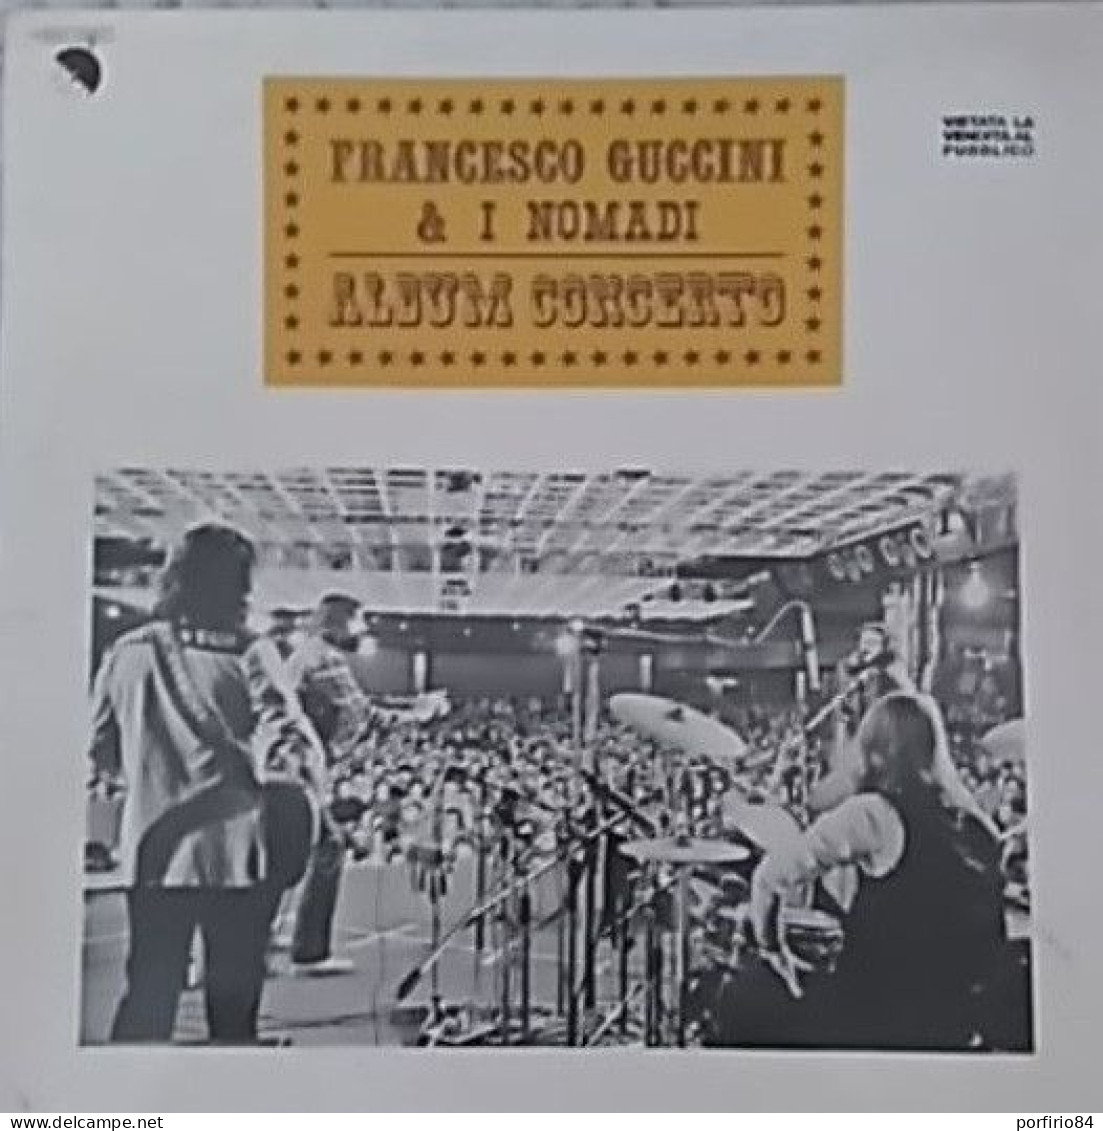 FRANCESCO GUCCINI & I NOMADI ALBUM CONCERTO LP 33 GIRI PROMO DEL 1979 - Altri - Musica Italiana